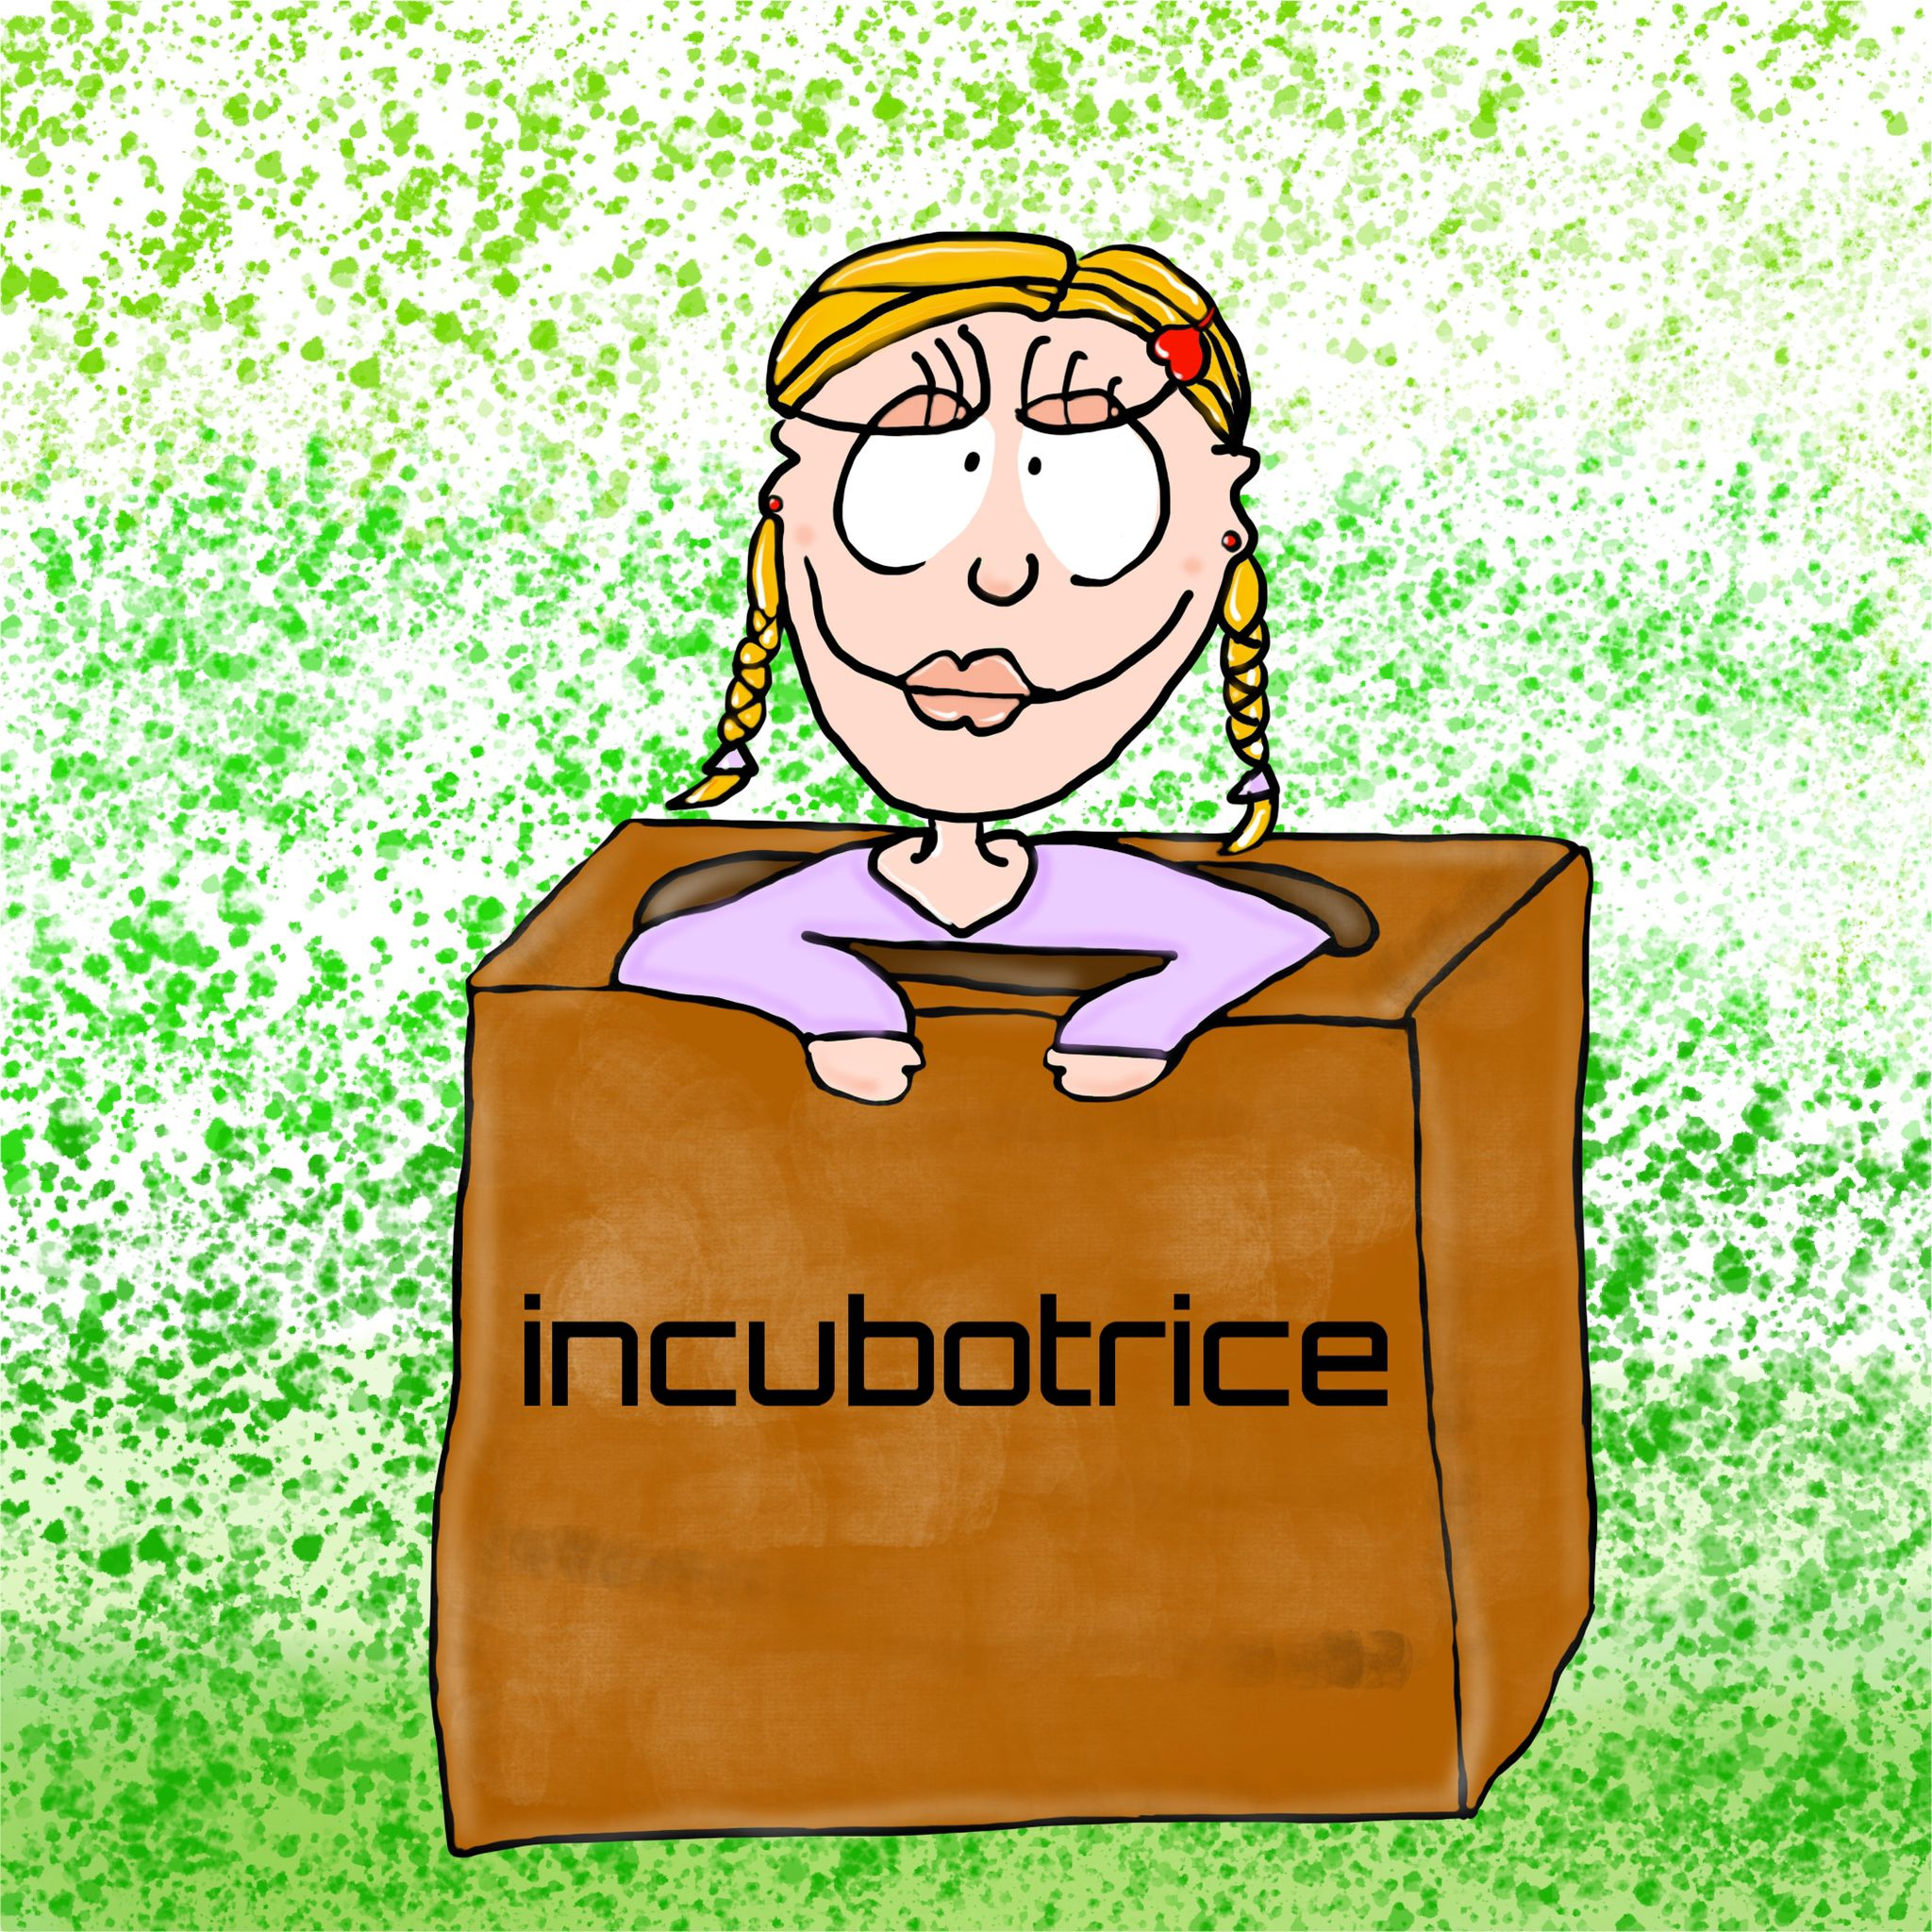 Incubotrice girl